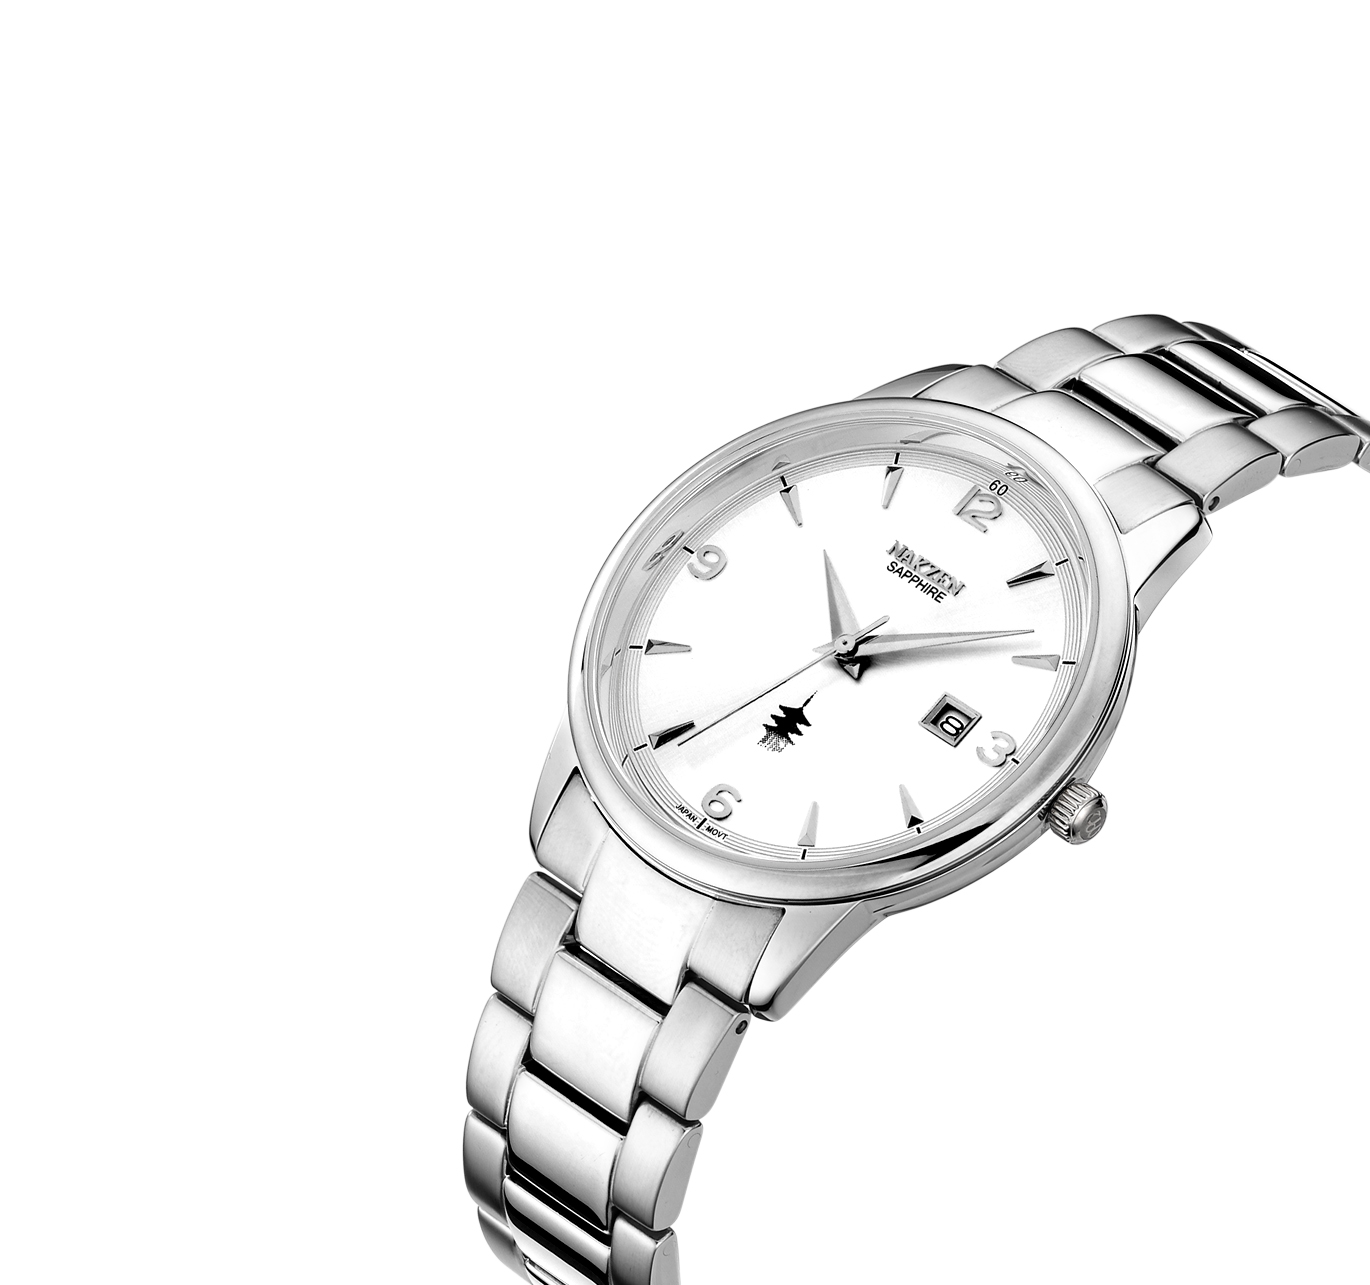  NAKZEN メンズ腕時計日本クォーツミニマリストステンレススチールスリム腕時計ブラックダイヤル3トーンSS1006G-7  